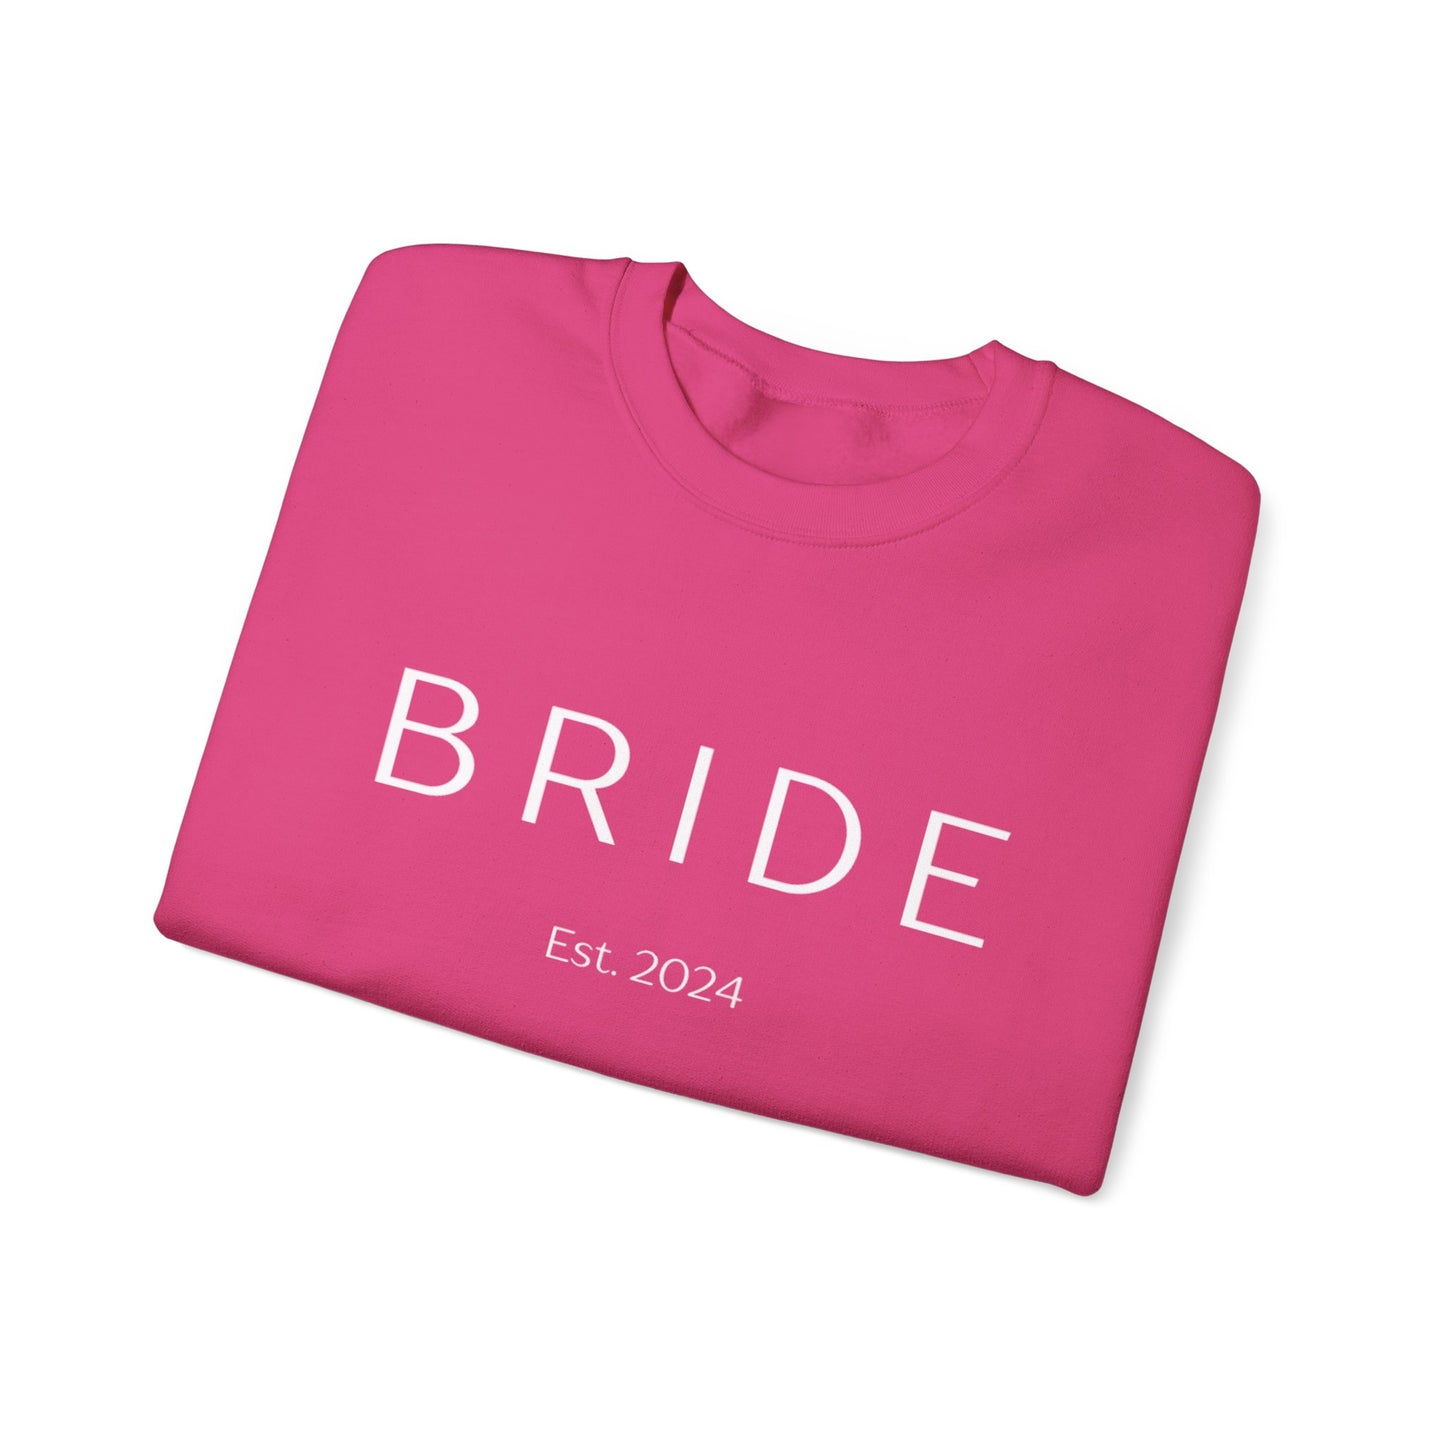 BRIDE Est. 2024 Crewneck Sweatshirt